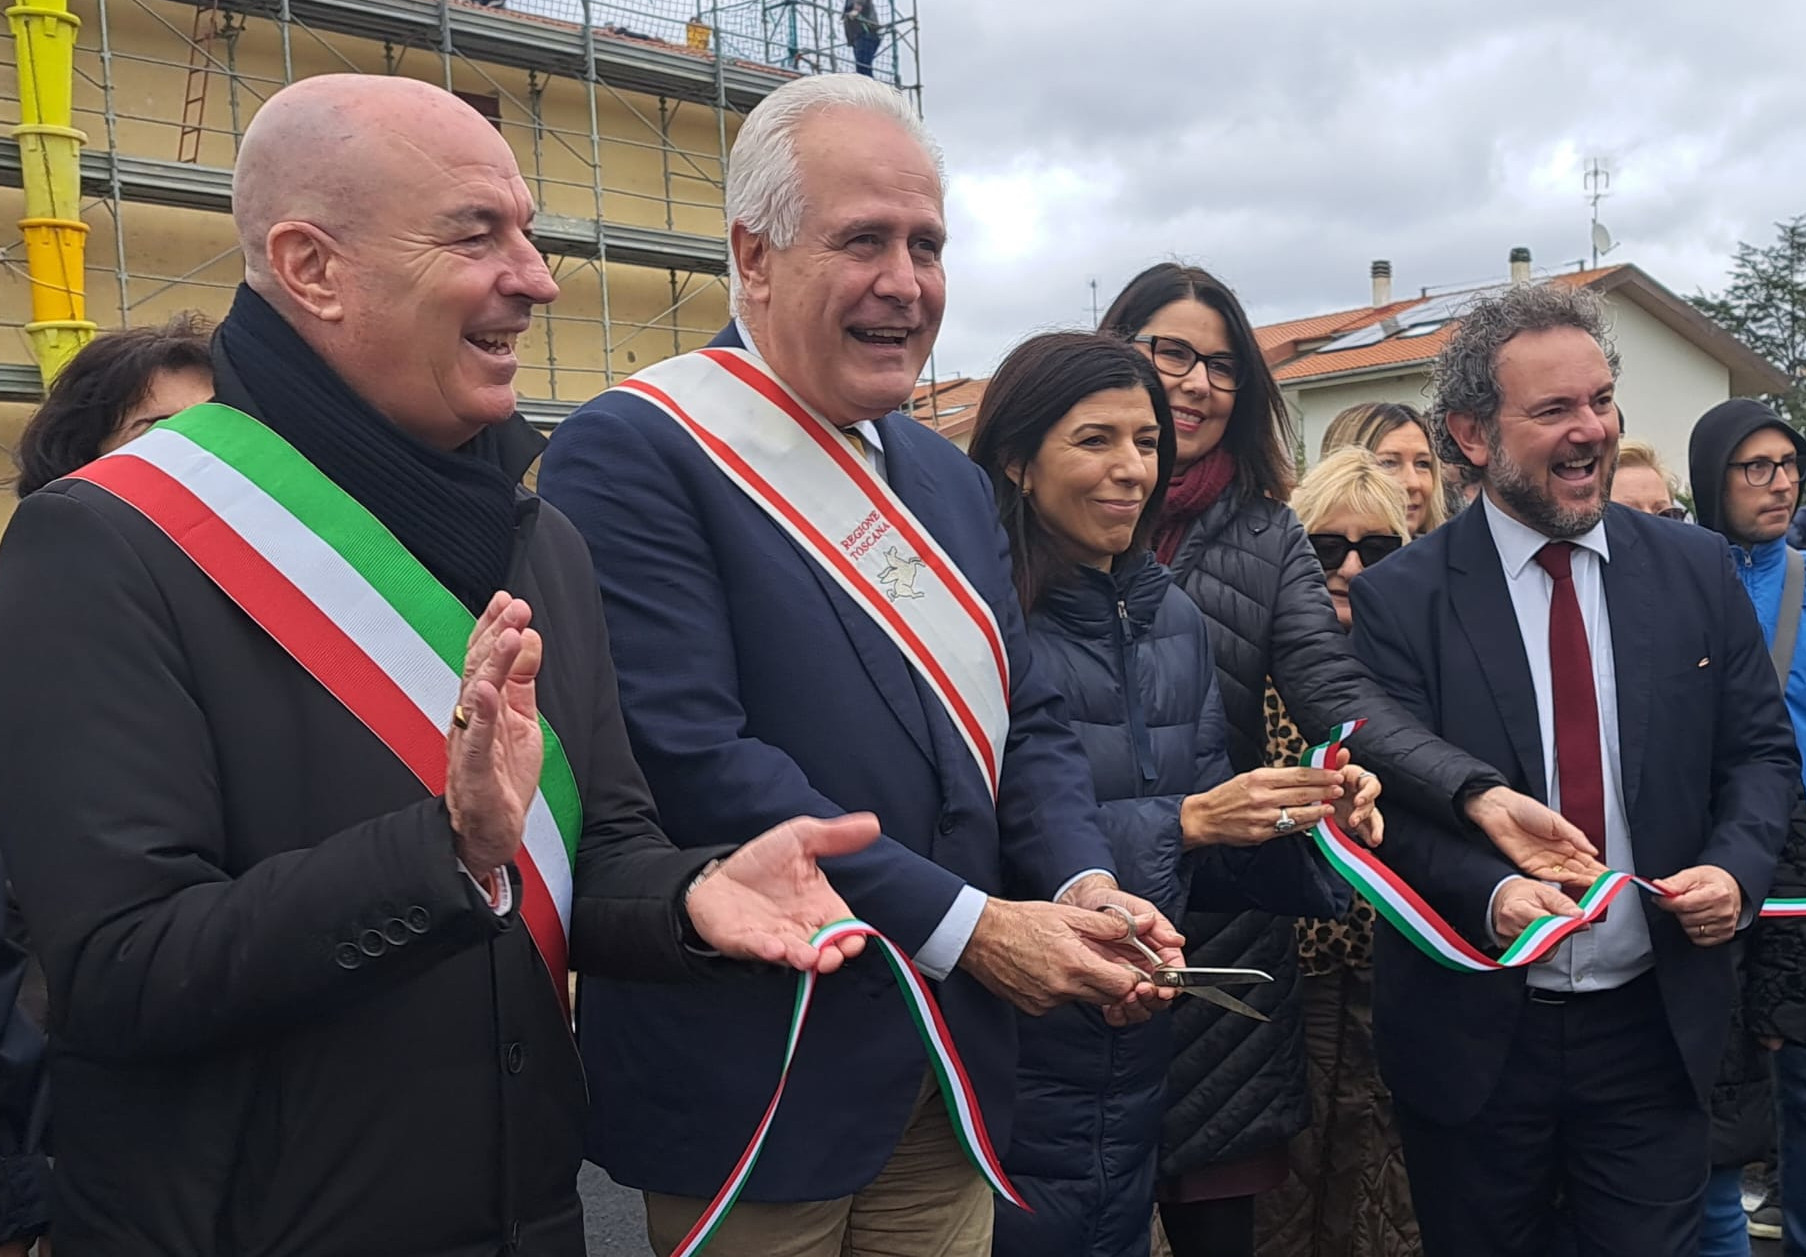 Giani inaugura nuovo ponte di Salviano a Livorno: “Rischio idraulico ridotto”